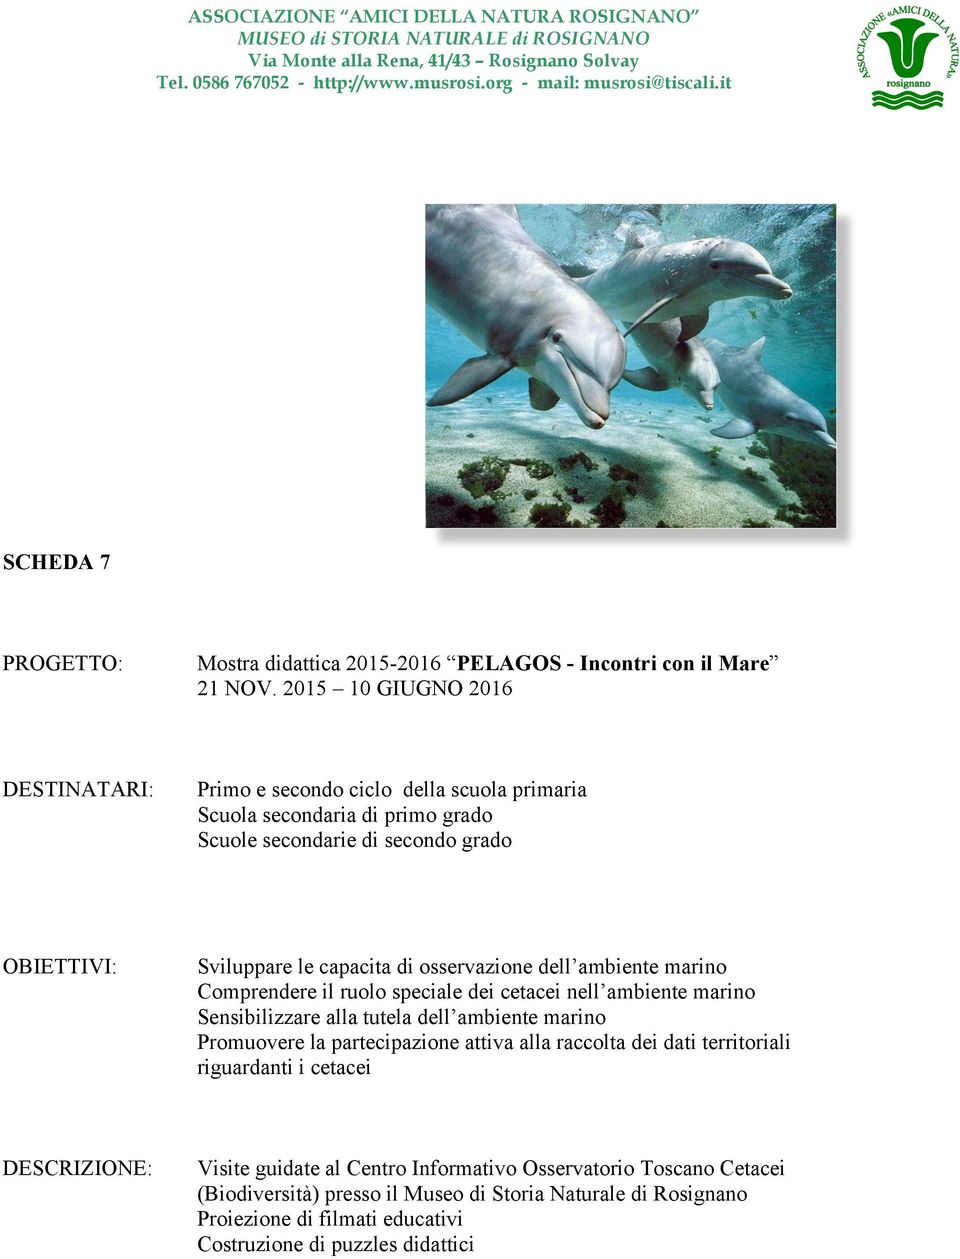 dei cetacei nell ambiente marino Sensibilizzare alla tutela dell ambiente marino Promuovere la partecipazione attiva alla raccolta dei dati